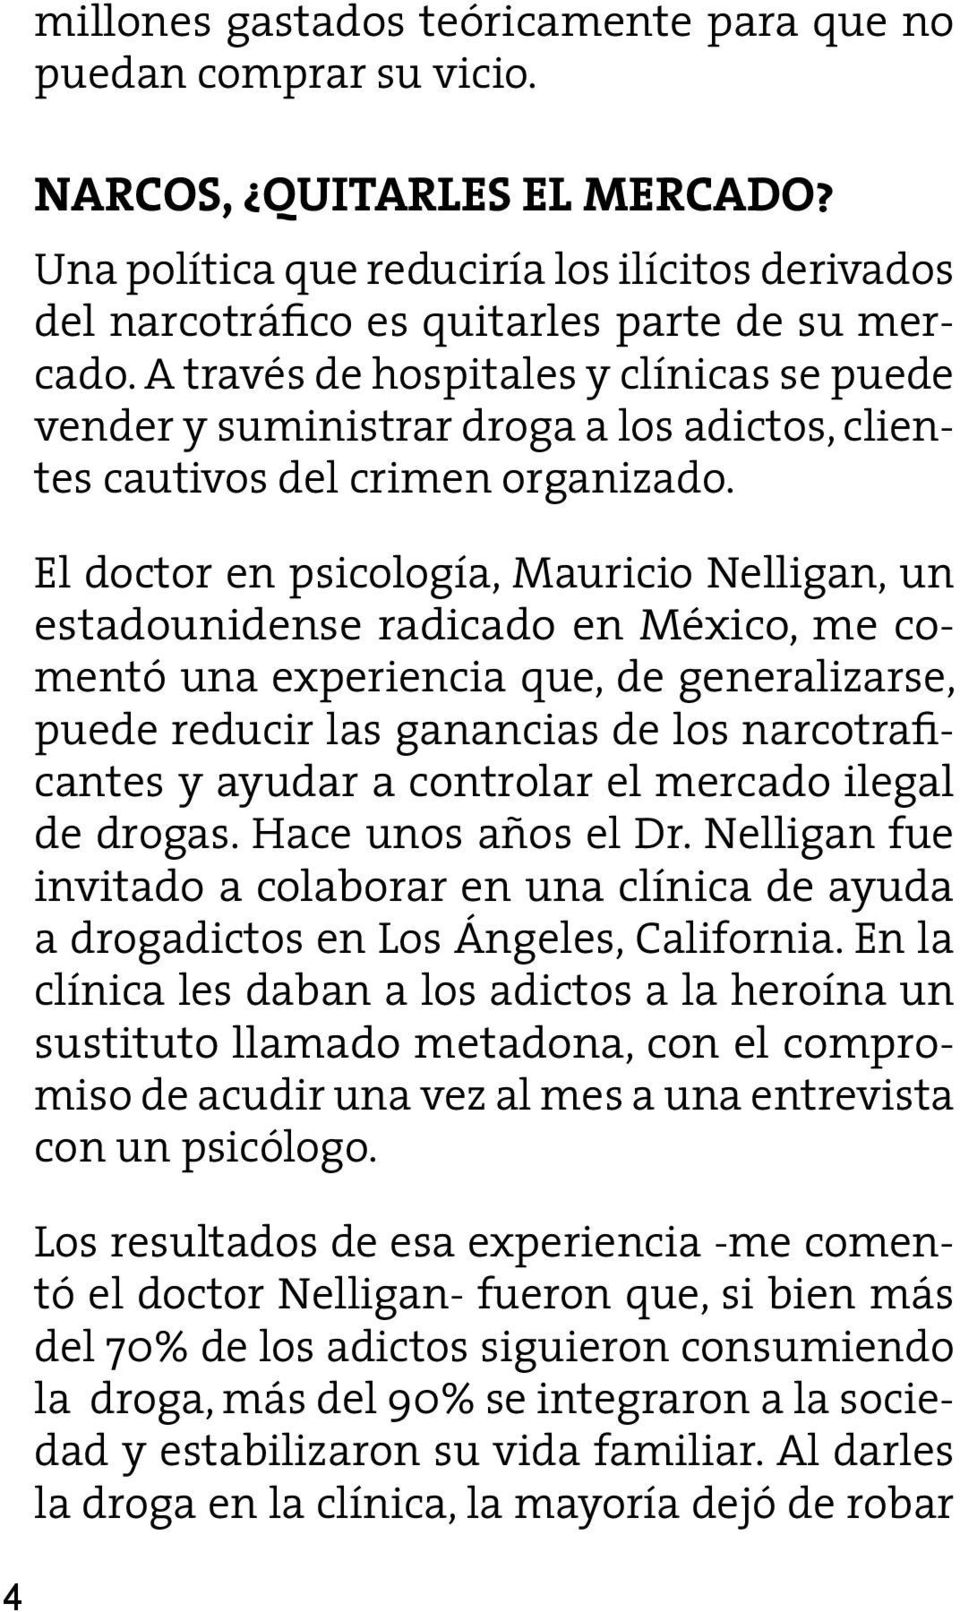 El doctor en psicología, Mauricio Nelligan, un estadounidense radicado en México, me comentó una experiencia que, de generalizarse, puede reducir las ganancias de los narcotraficantes y ayudar a